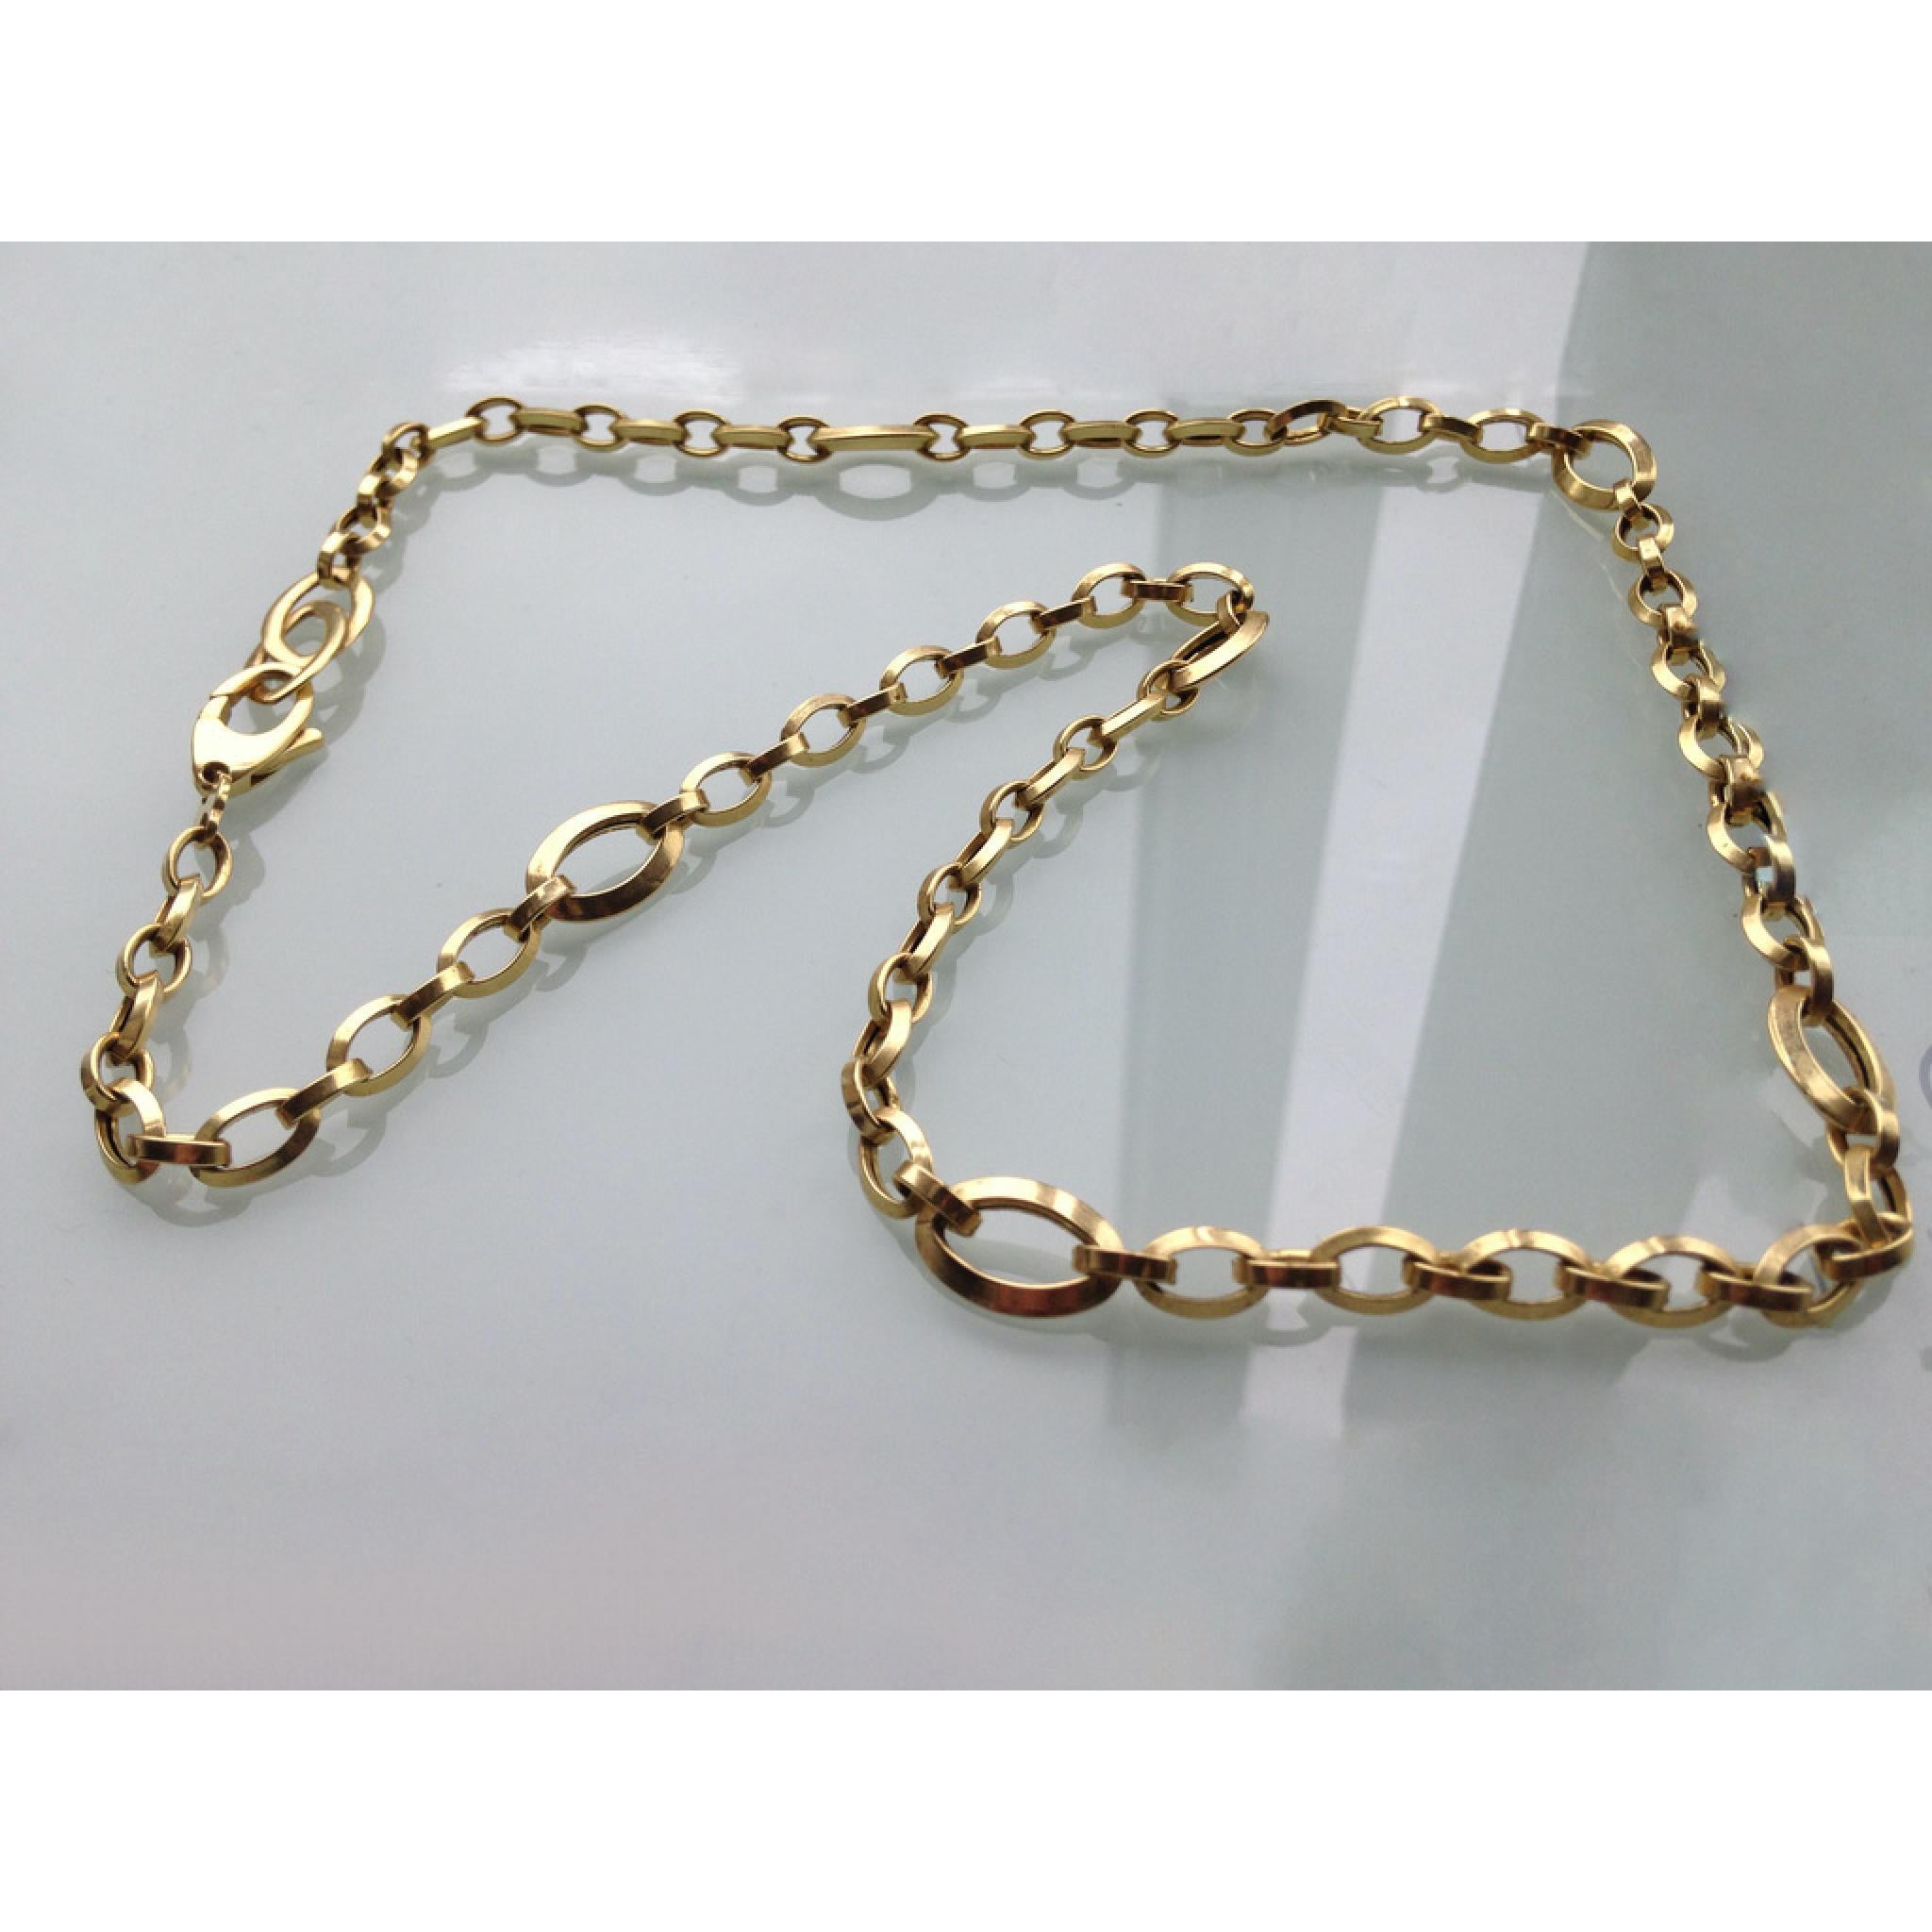 9ct 375 Gold 1980s Oval Design Matching Set

Bracelet & Necklace 

Both Fully Hallmarked 
Design dated 1980s
Bracelet weighs 7.27 grammes
Bracelet Length 9